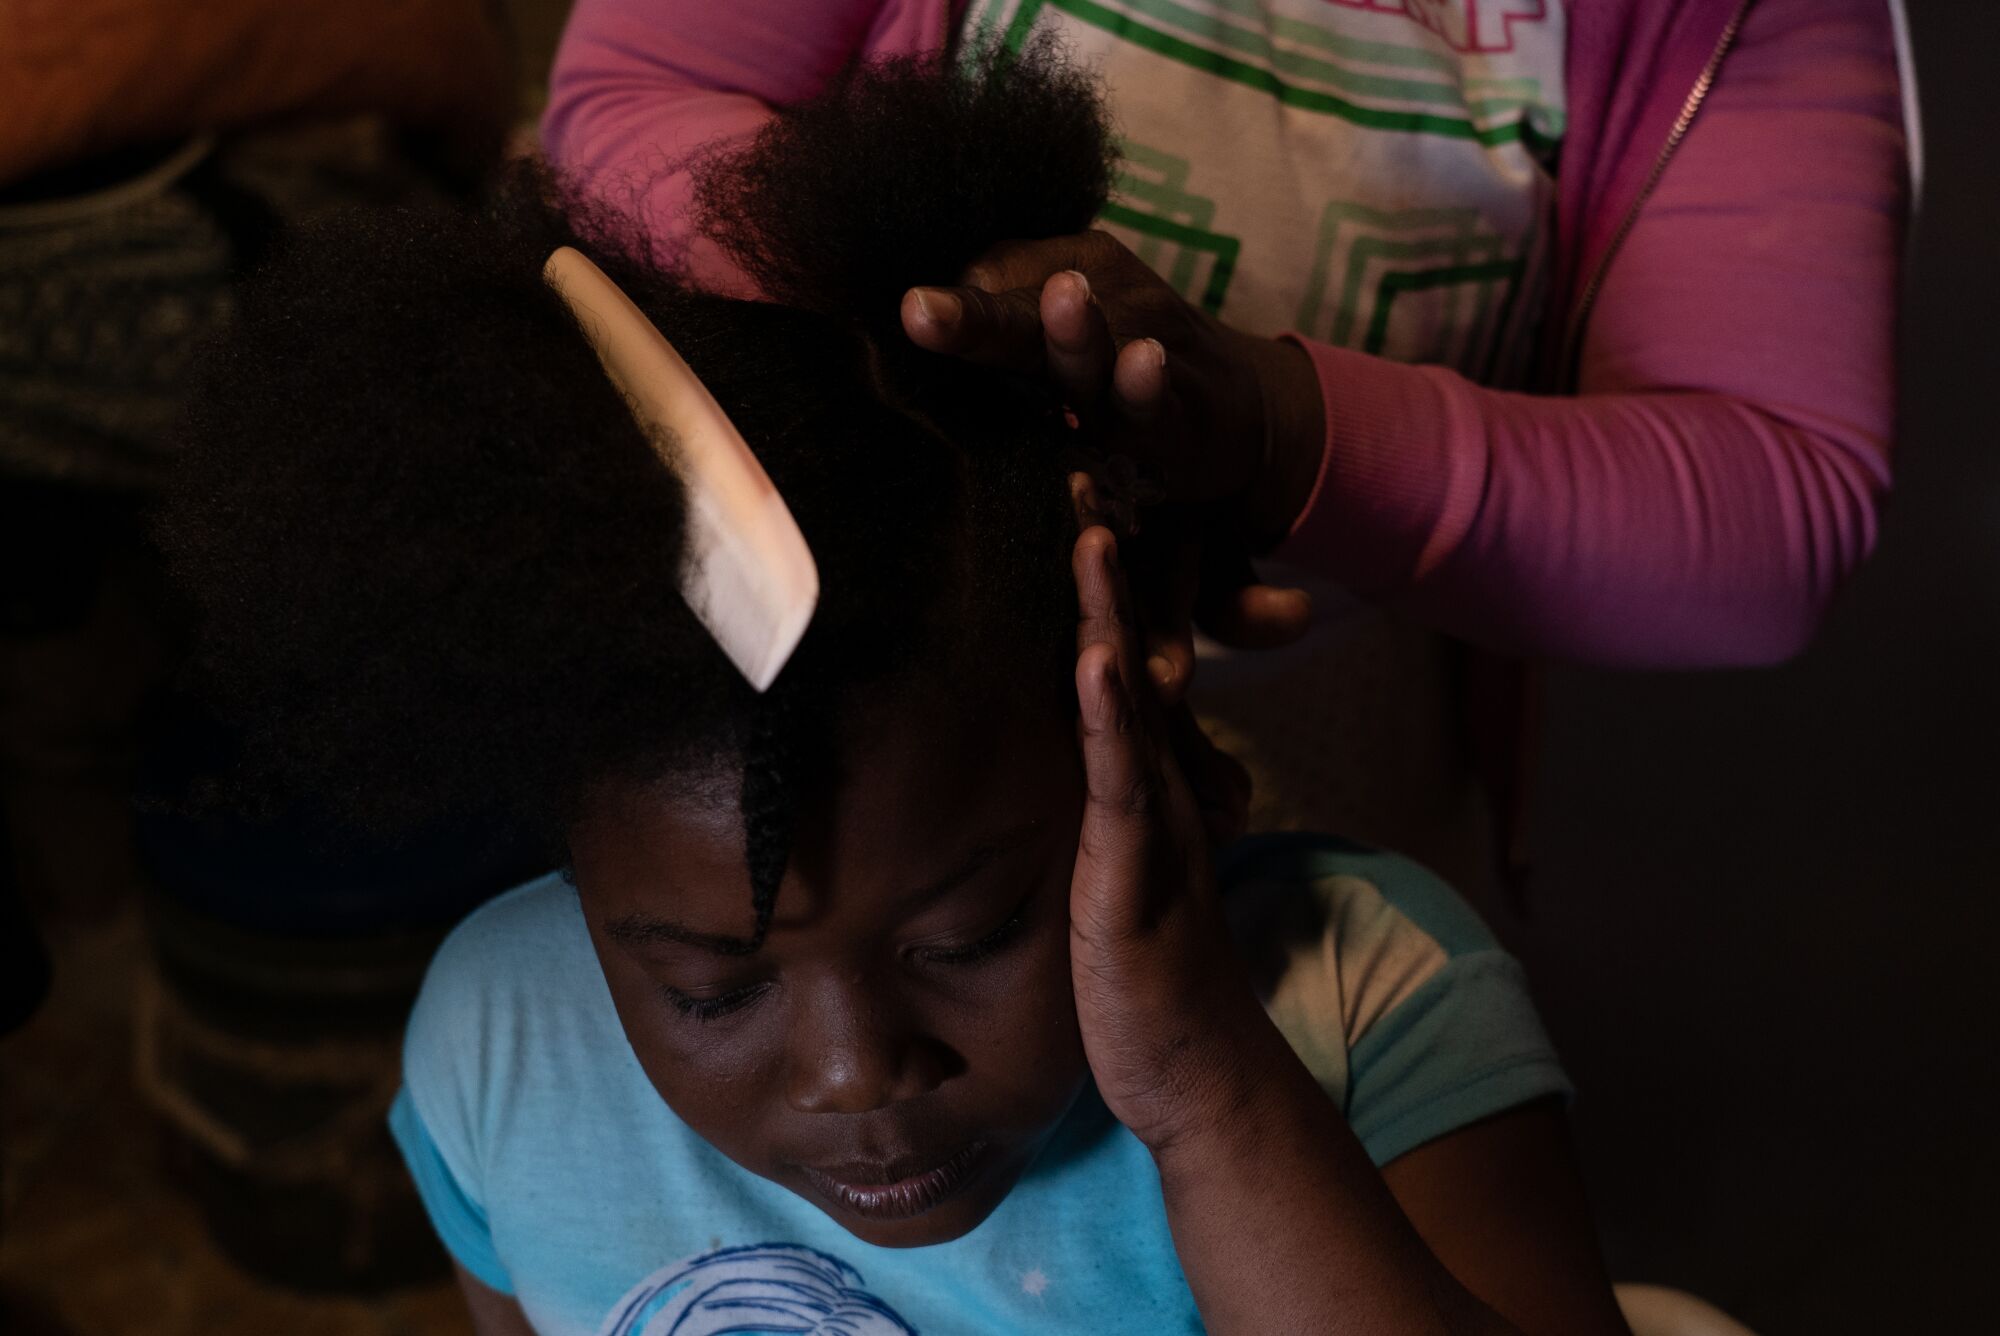 Antoinette Darelus helps her daughter, Dawendjina, with her hair before school.